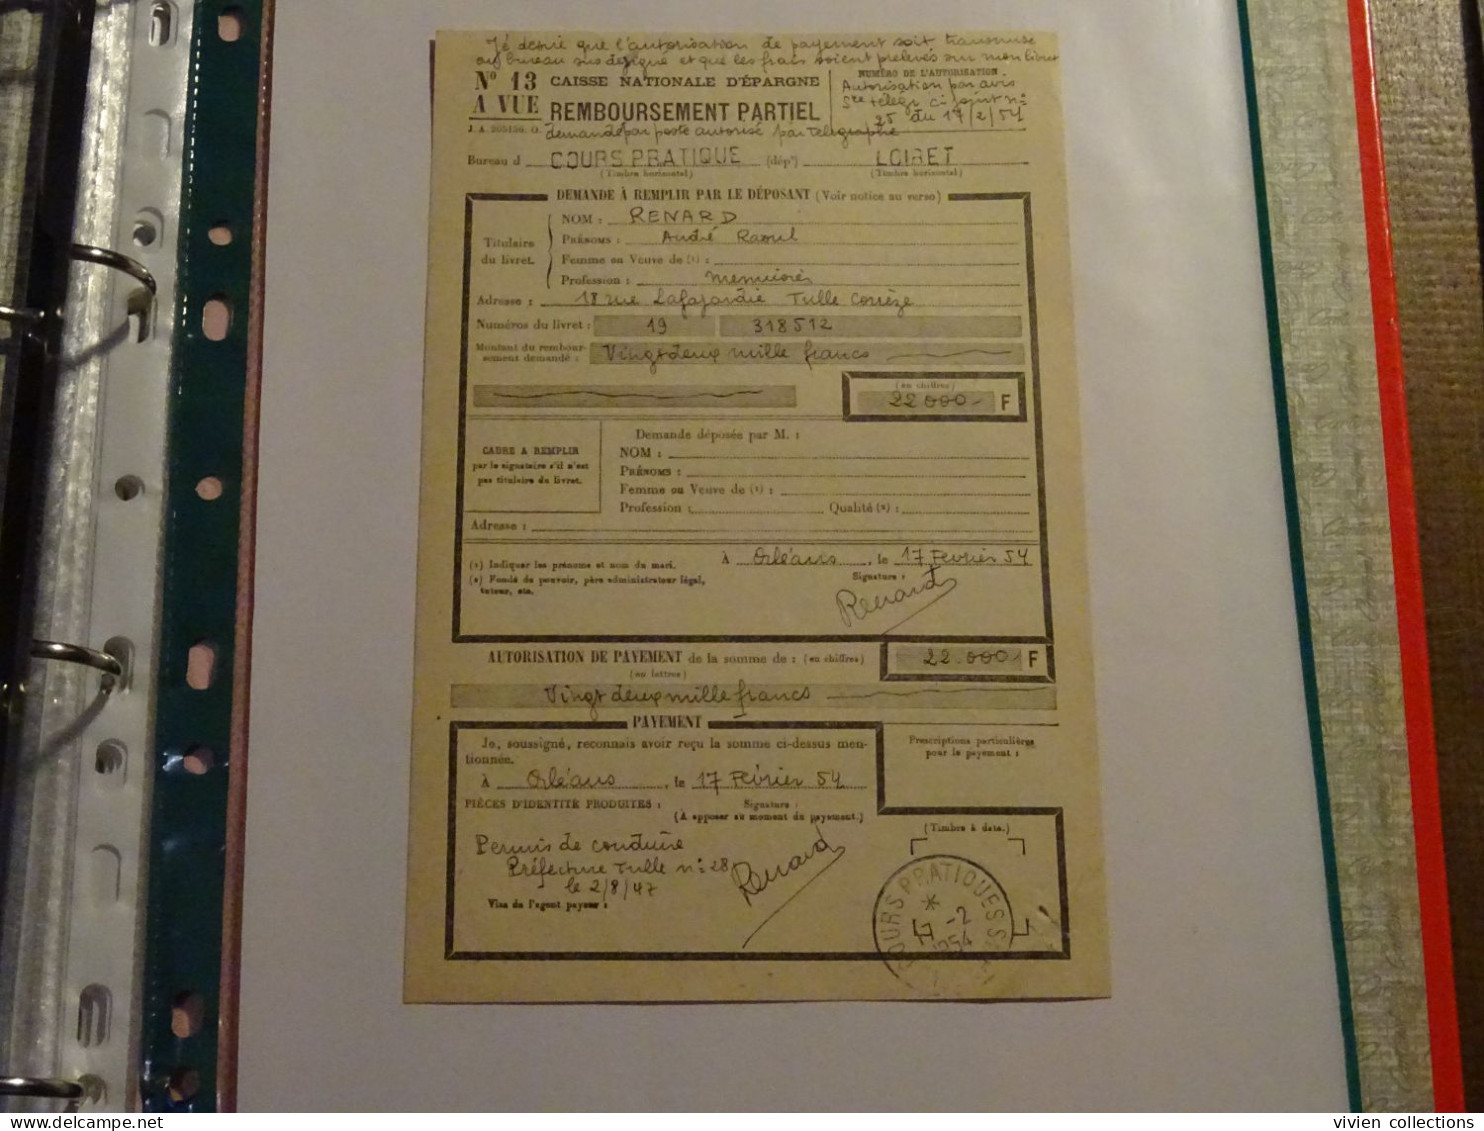 France Cours Pratique D'instruction Orléans 1954 Télégramme Remboursement A Vue Partiel CNE M. Renard Menuisier à Tulle - Cours D'Instruction